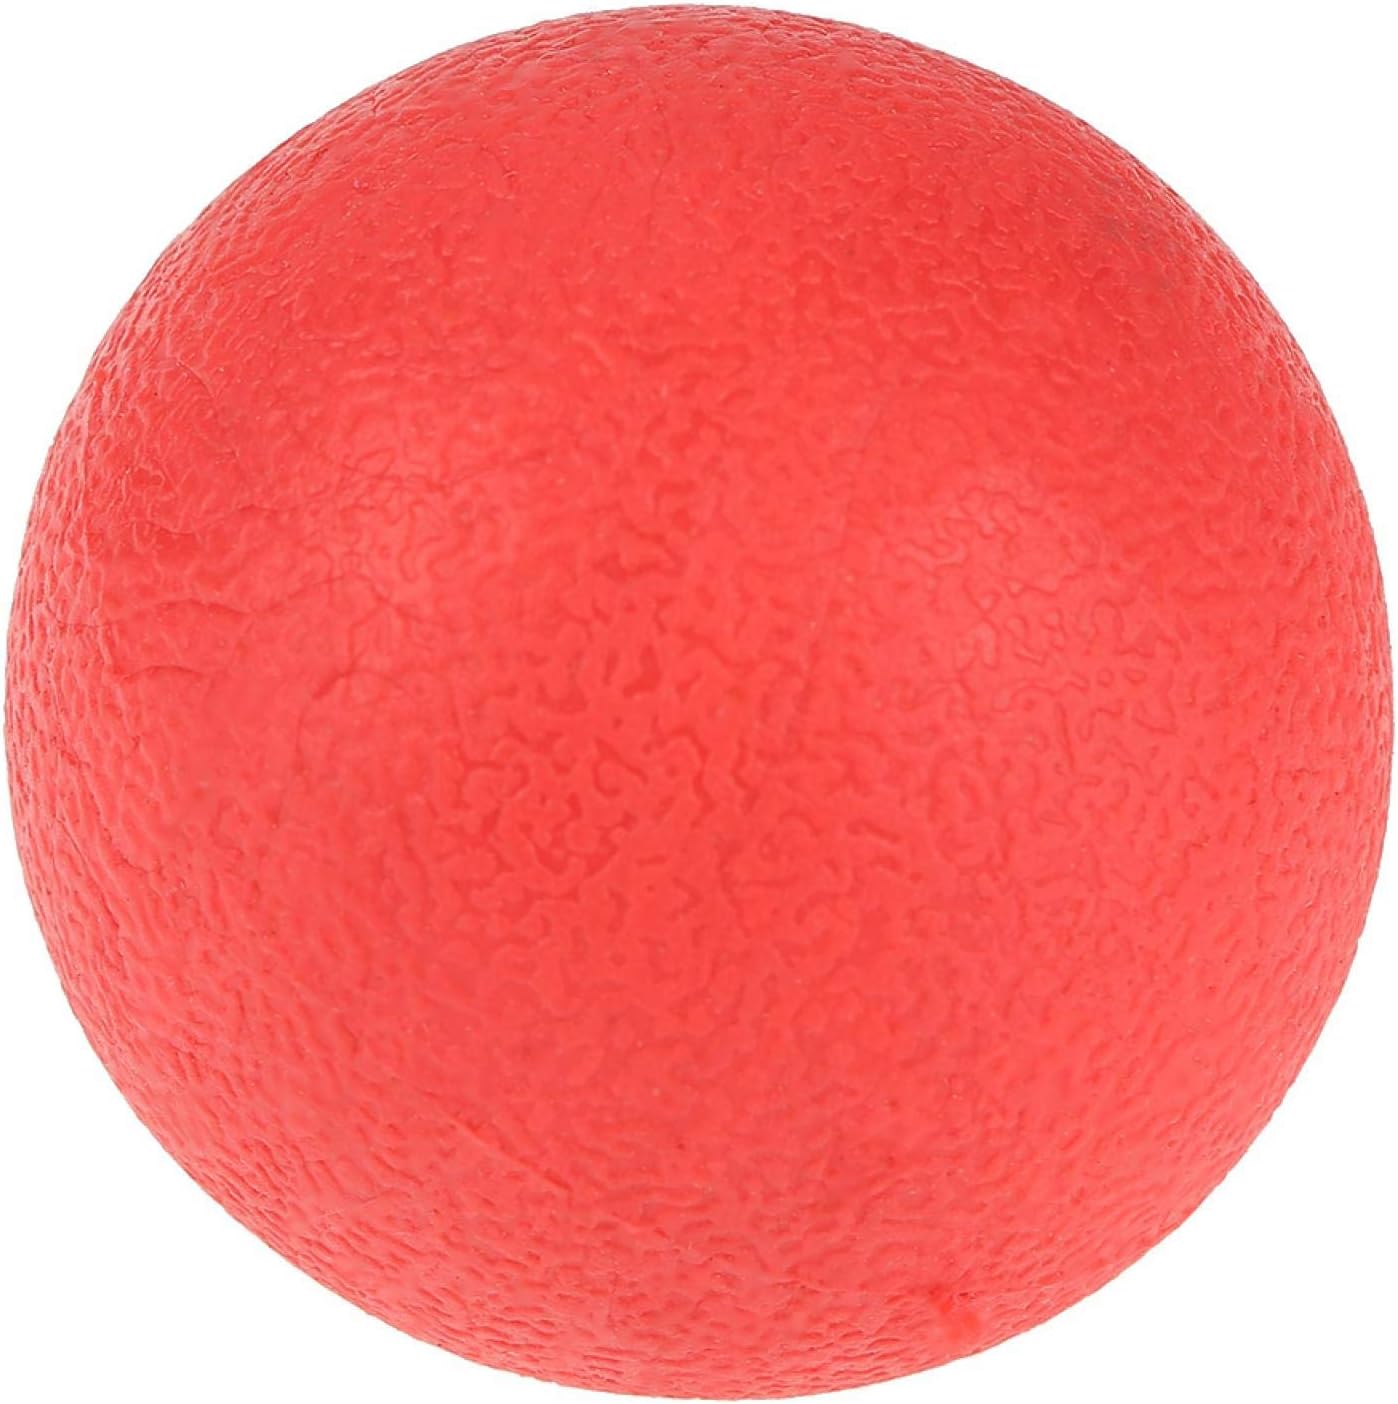 Rubz Rubber Ball Small - 1pc